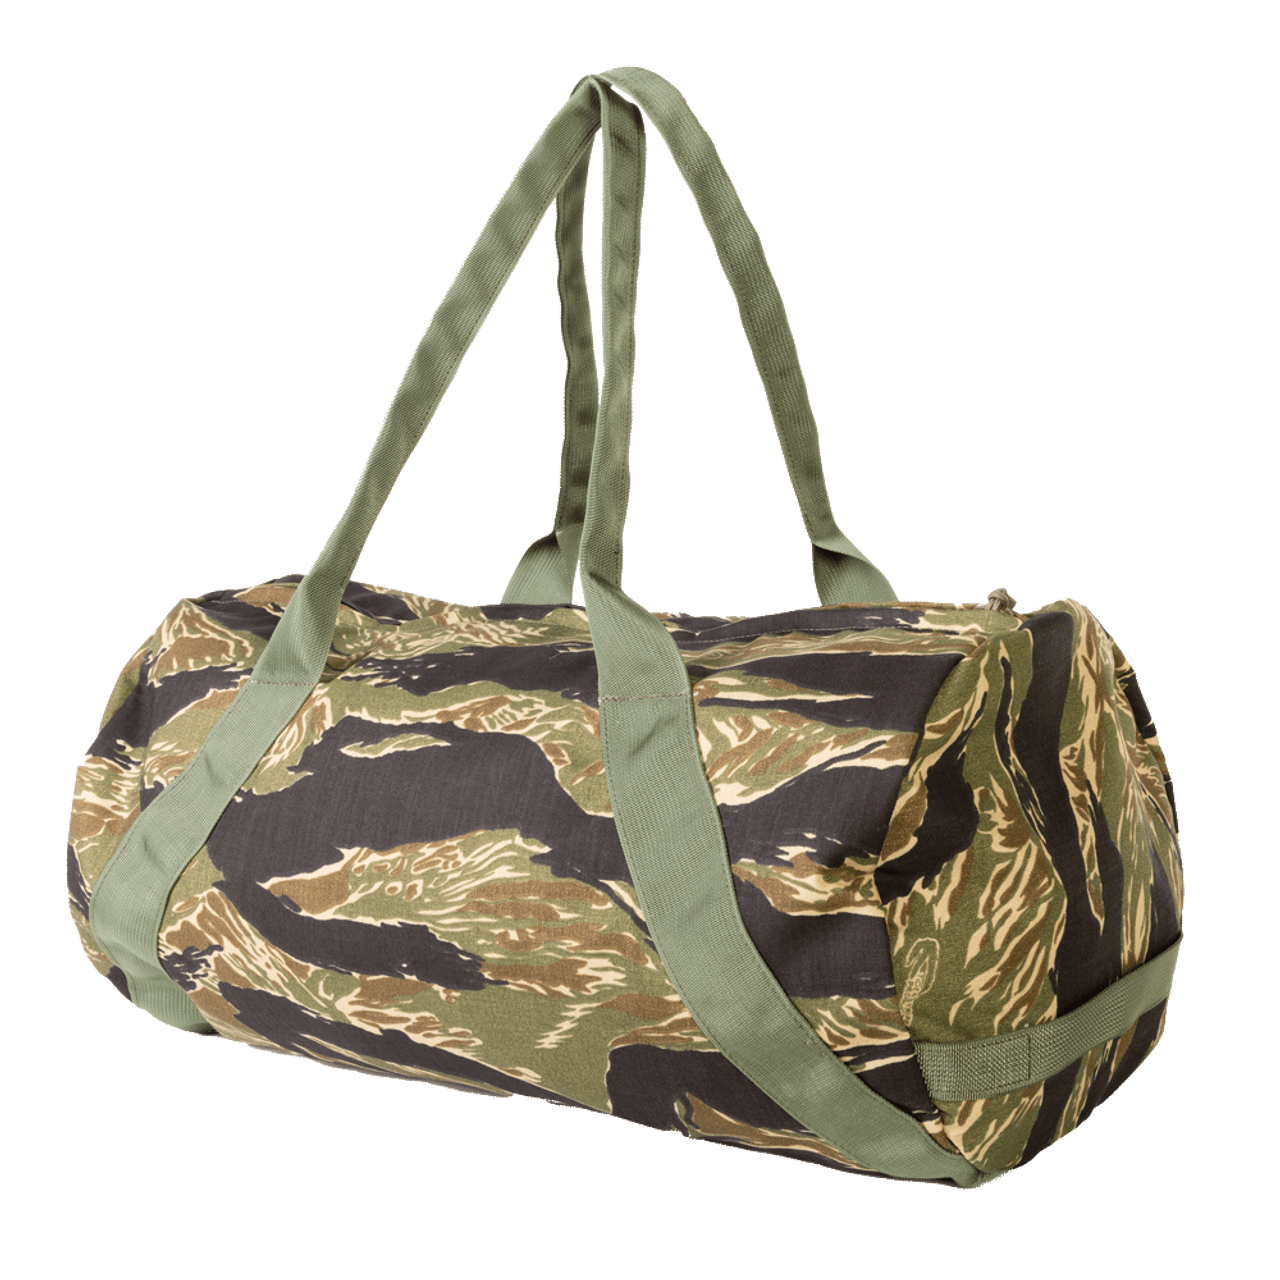 Mossy Oak Duffel Bag, Medium Duffels